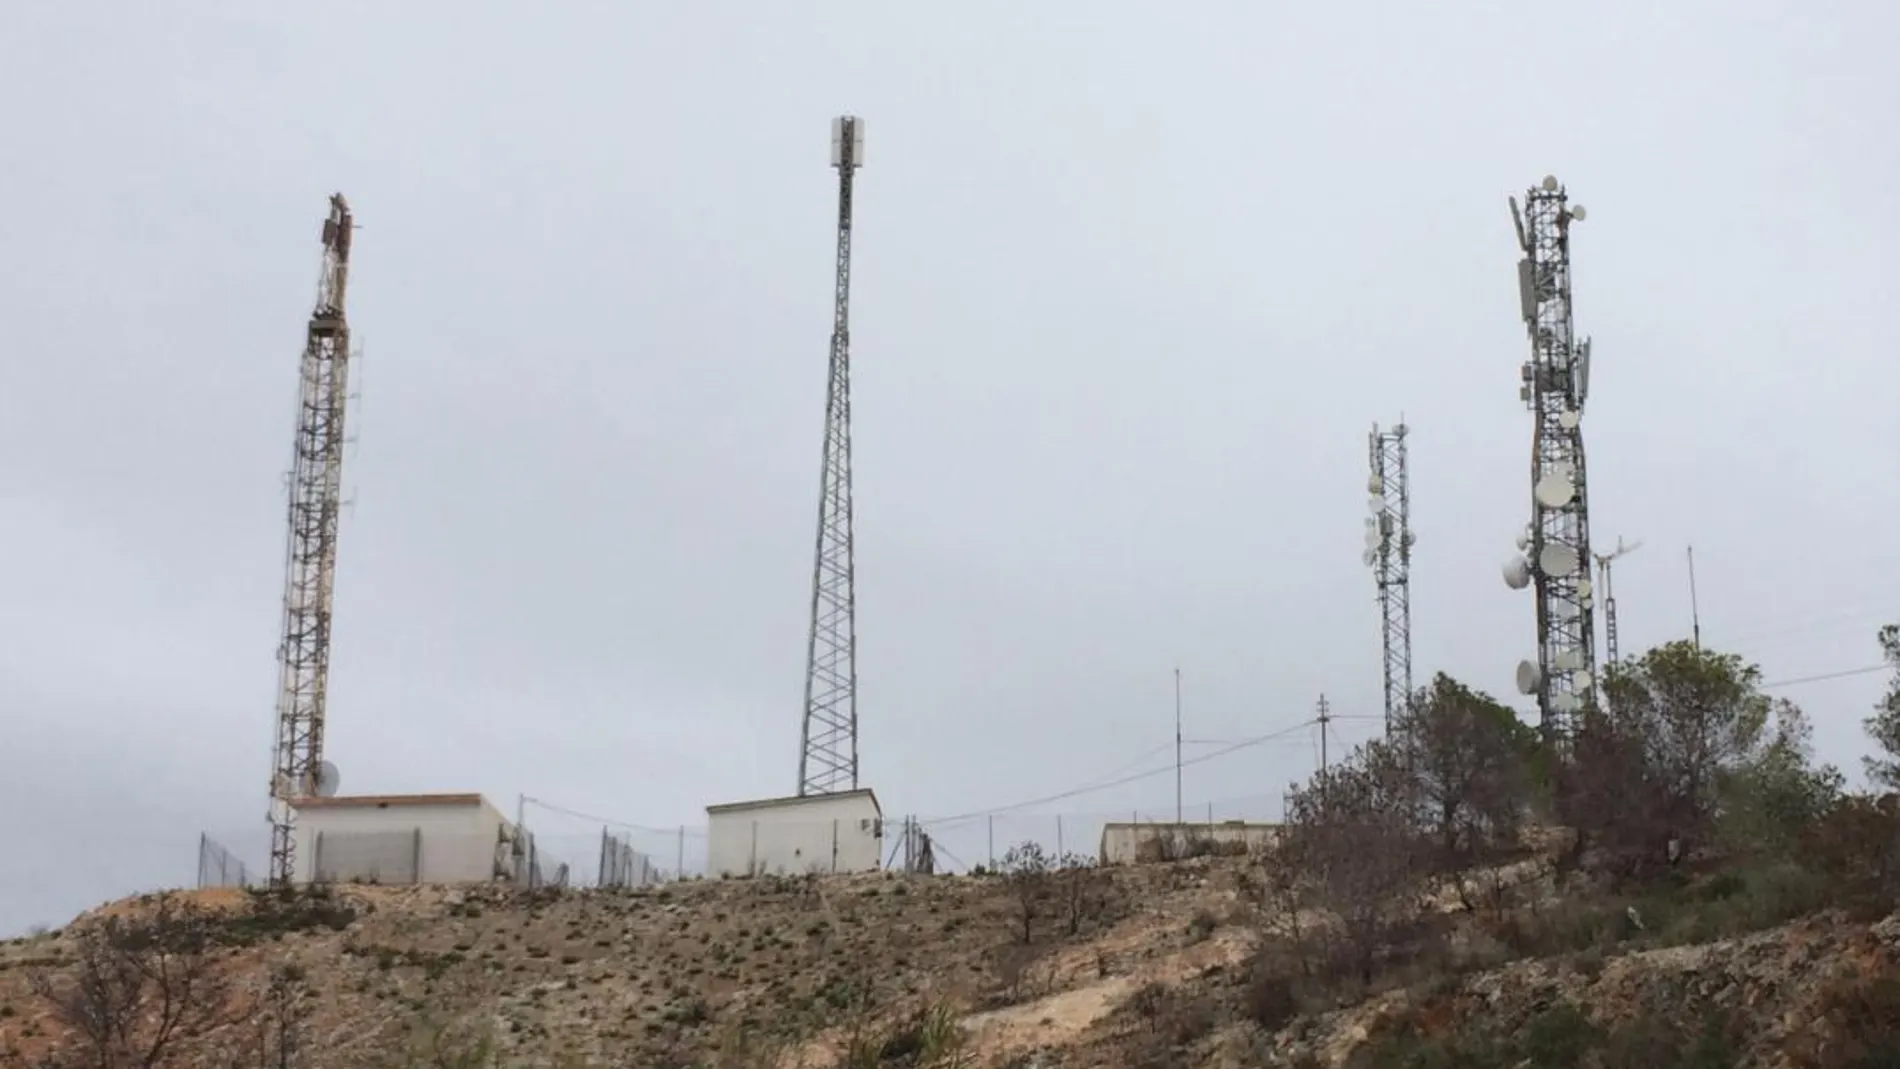 Muchas de las emisoras que carecen de licencia emiten desde la sierra de Perenxisa, entre Torrente y Chiva